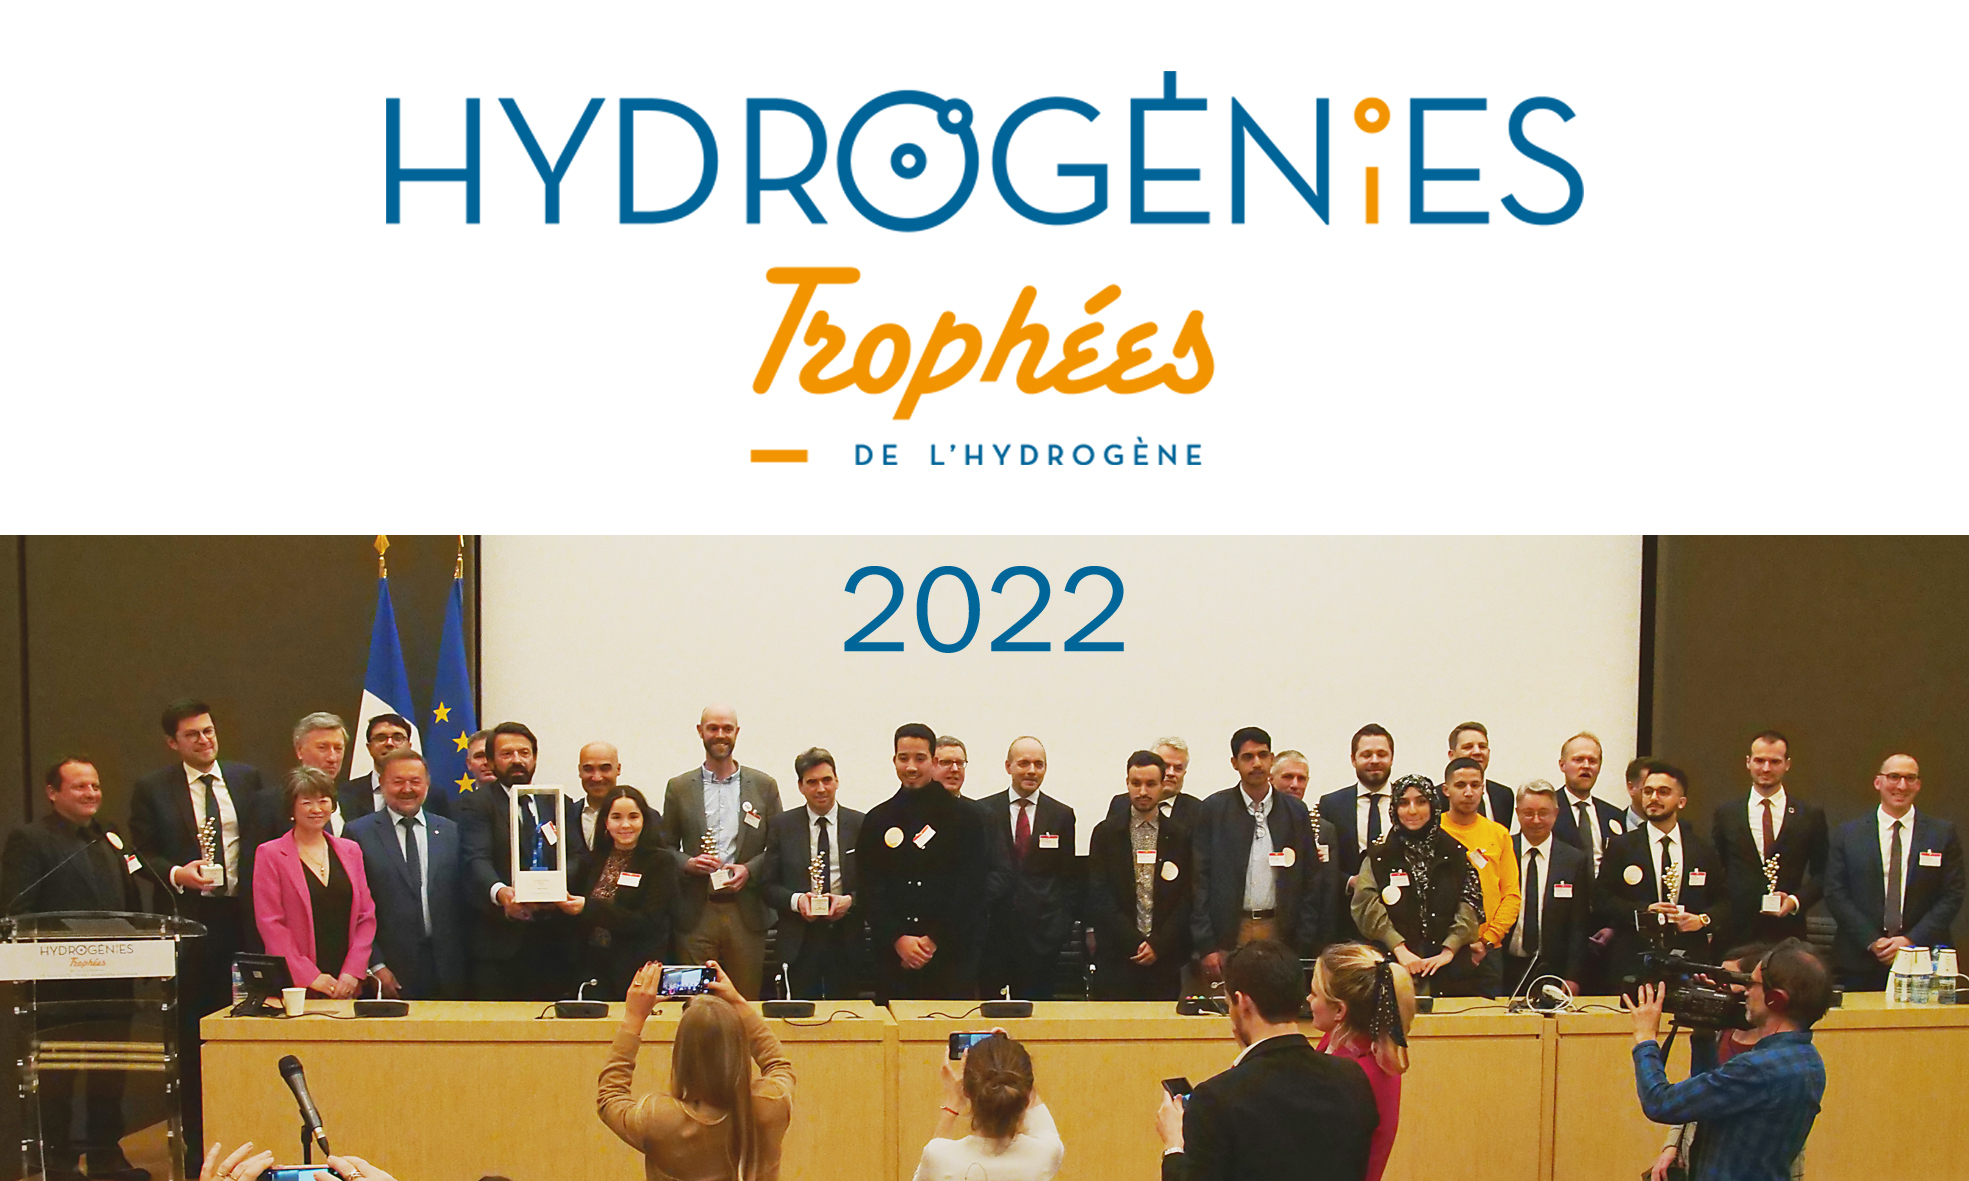 Hydrogénies, les trophées de l'hydrogène